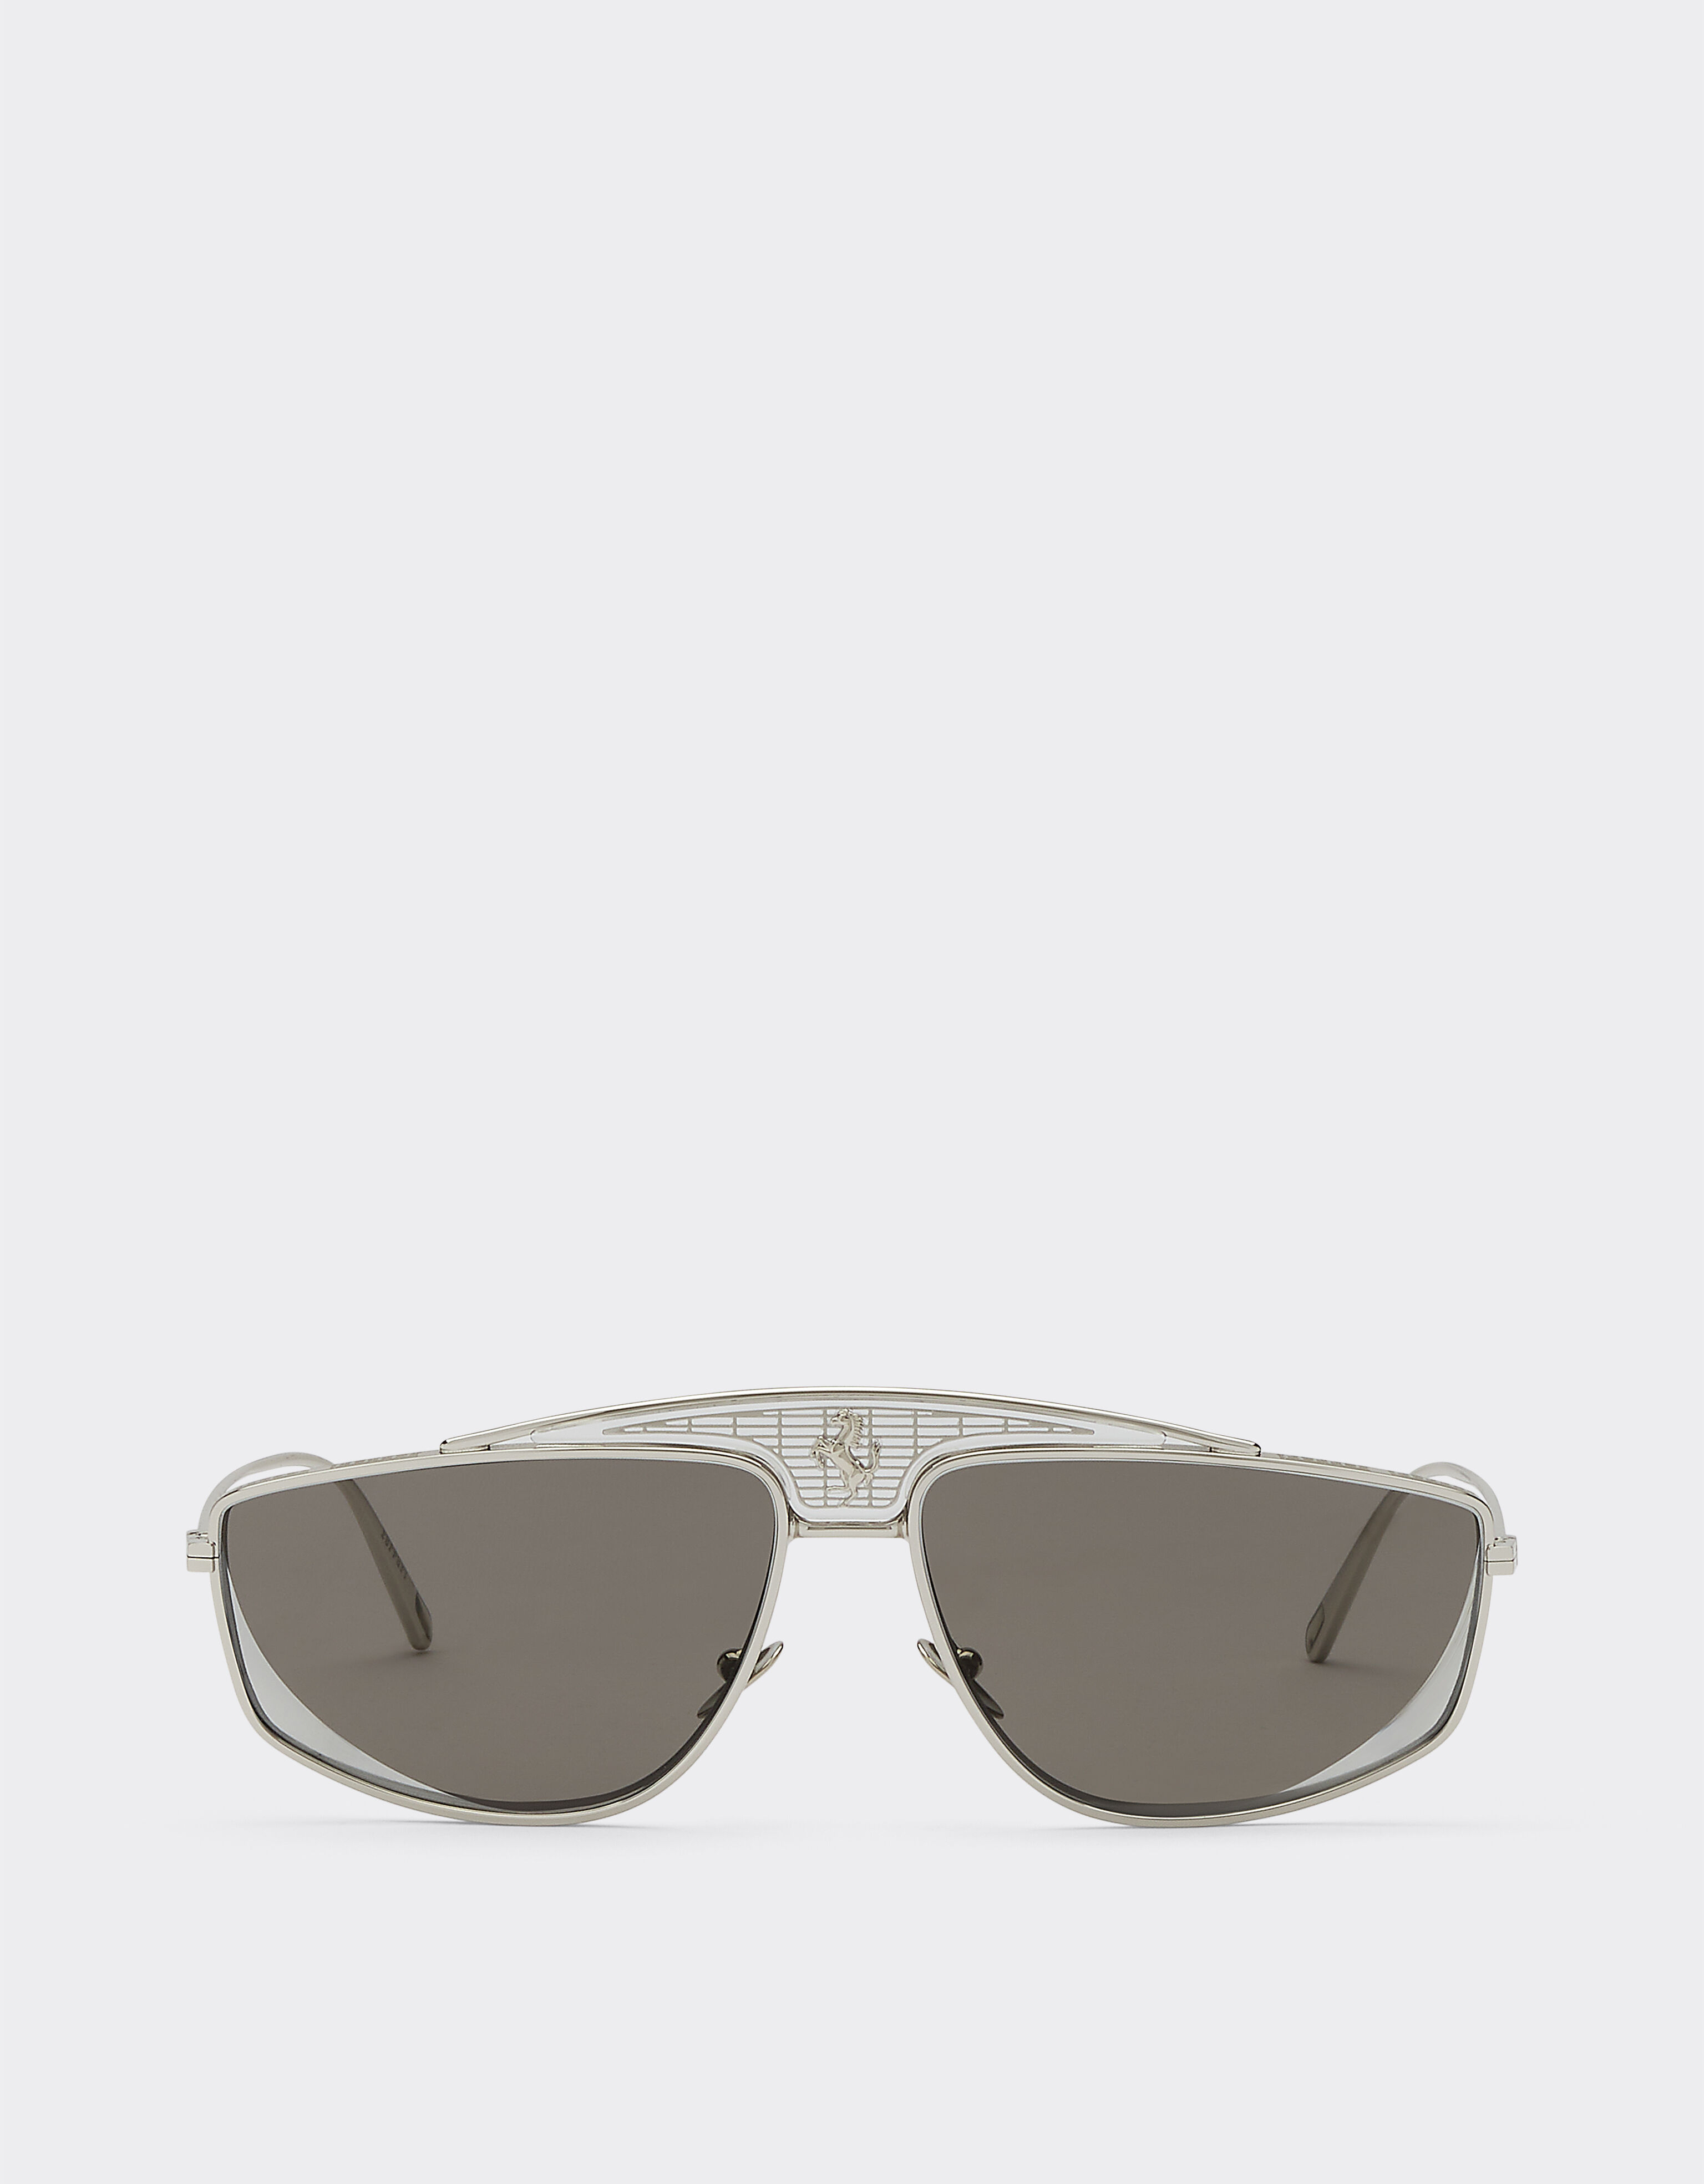 Ferrari Ferrari sunglasses with silver mirrored lenses Silver F1248f